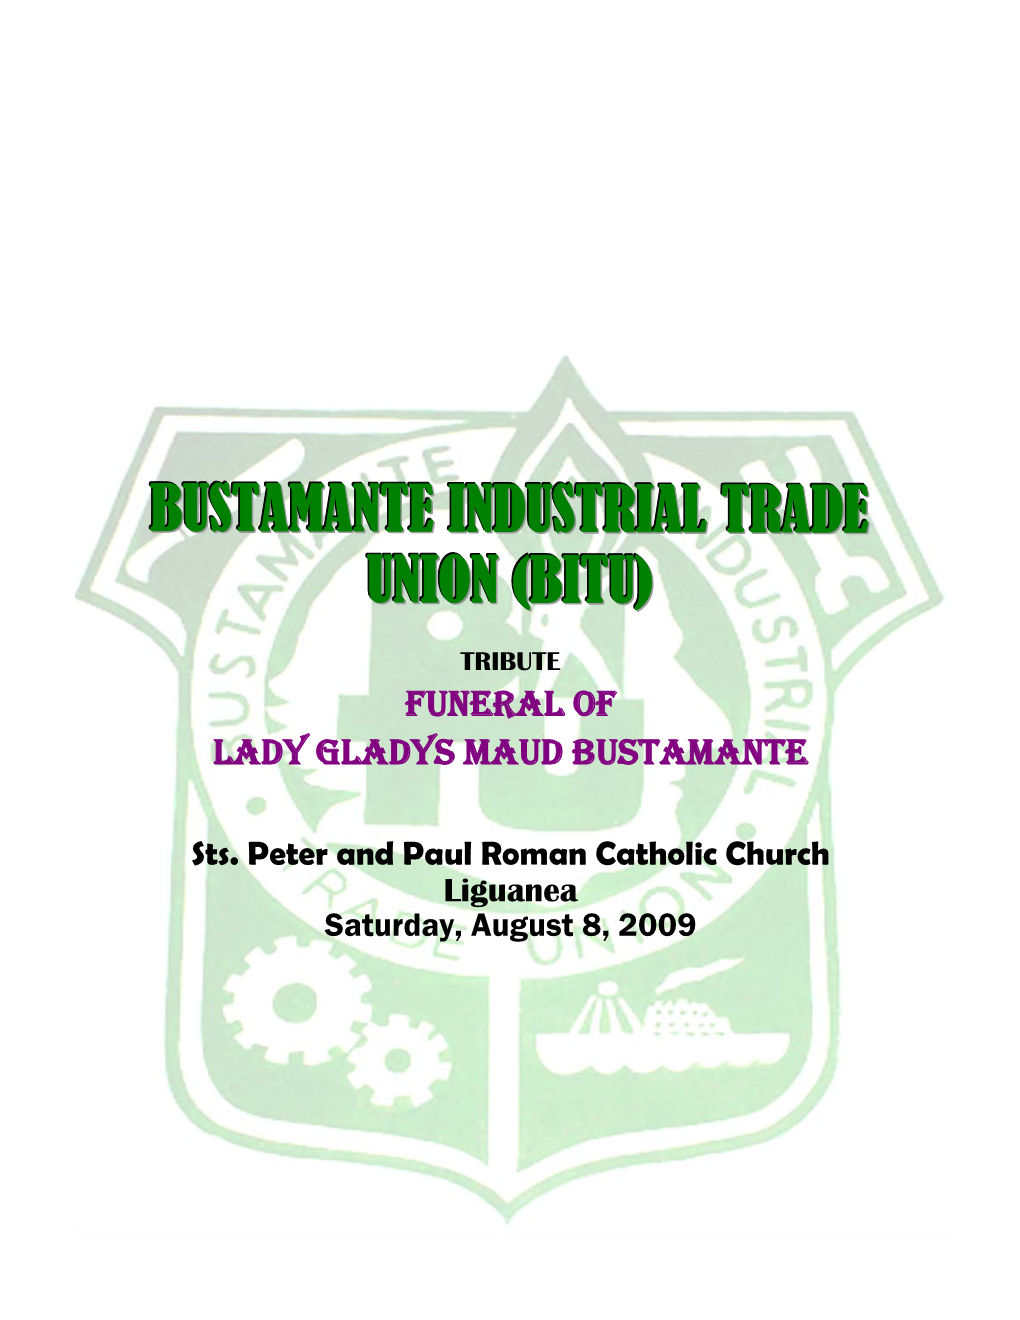 Bustamante Industrial Trade Union (Bitu)